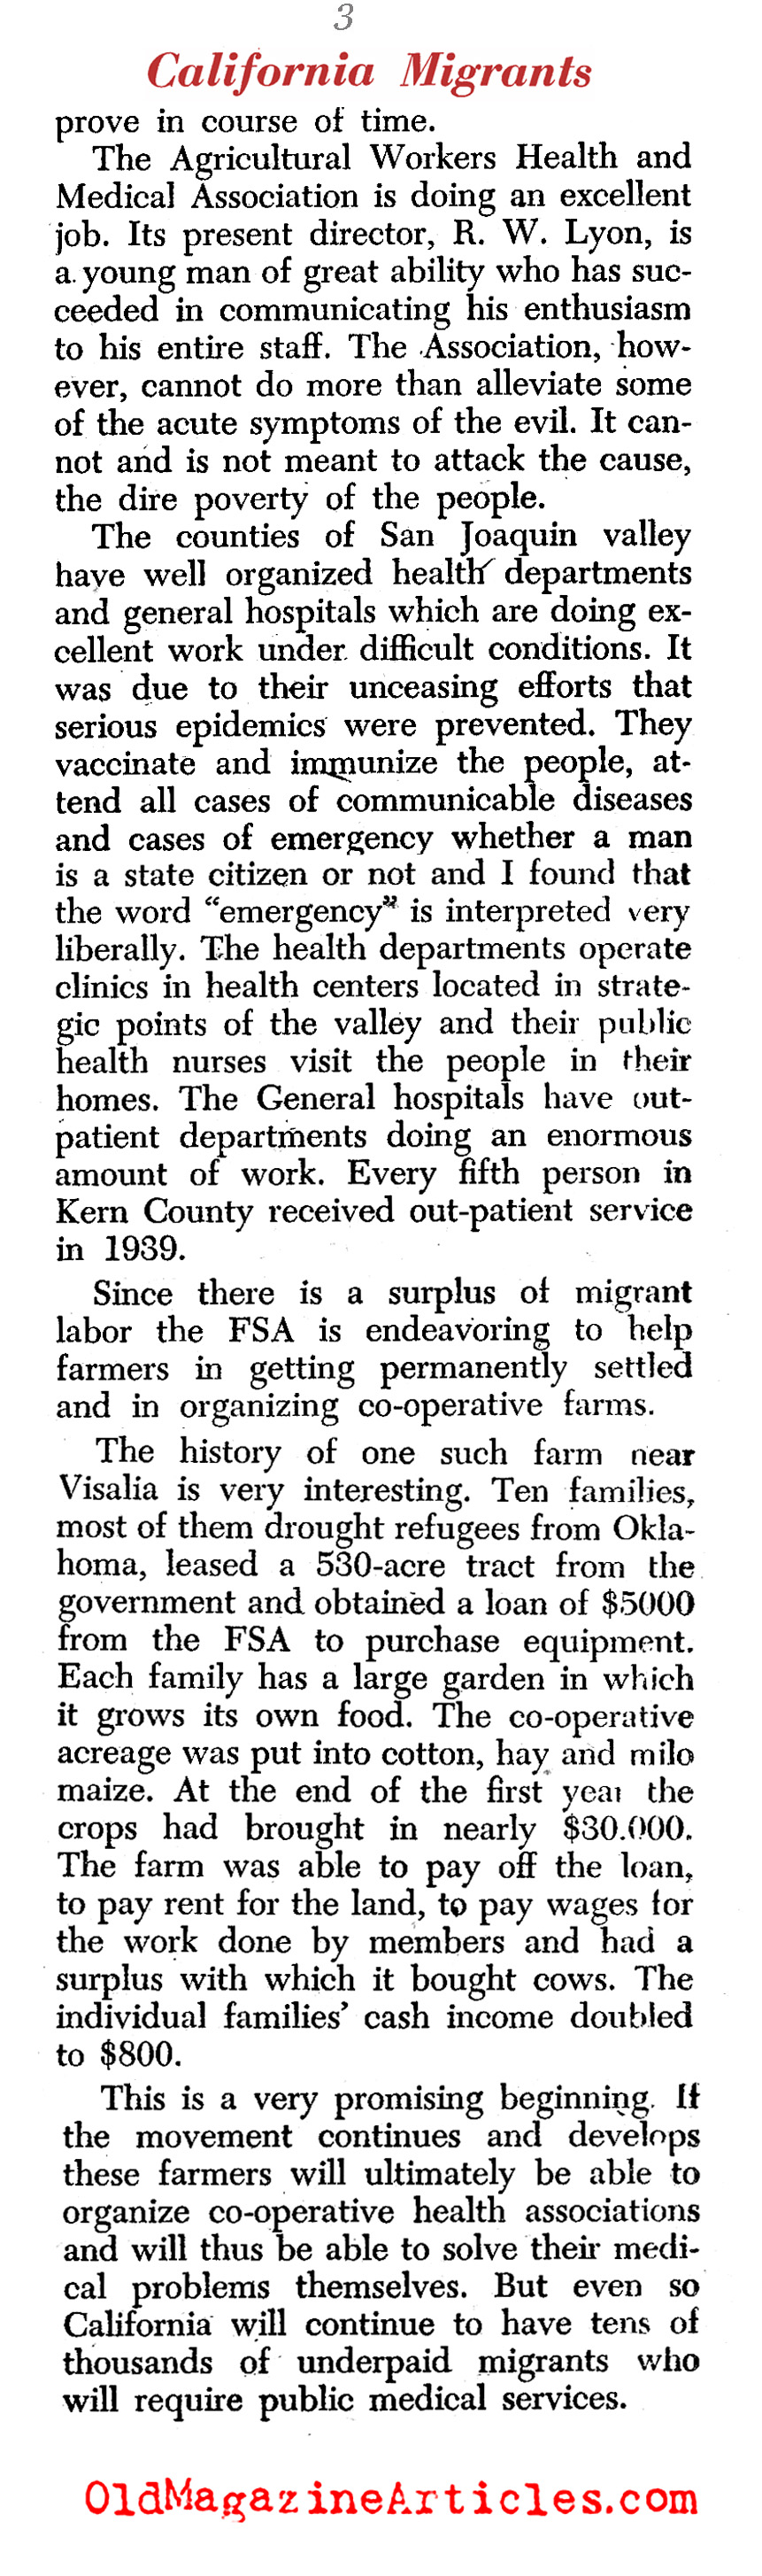 Government Heath Care for California Migrants (PM Tabloid, 1940)